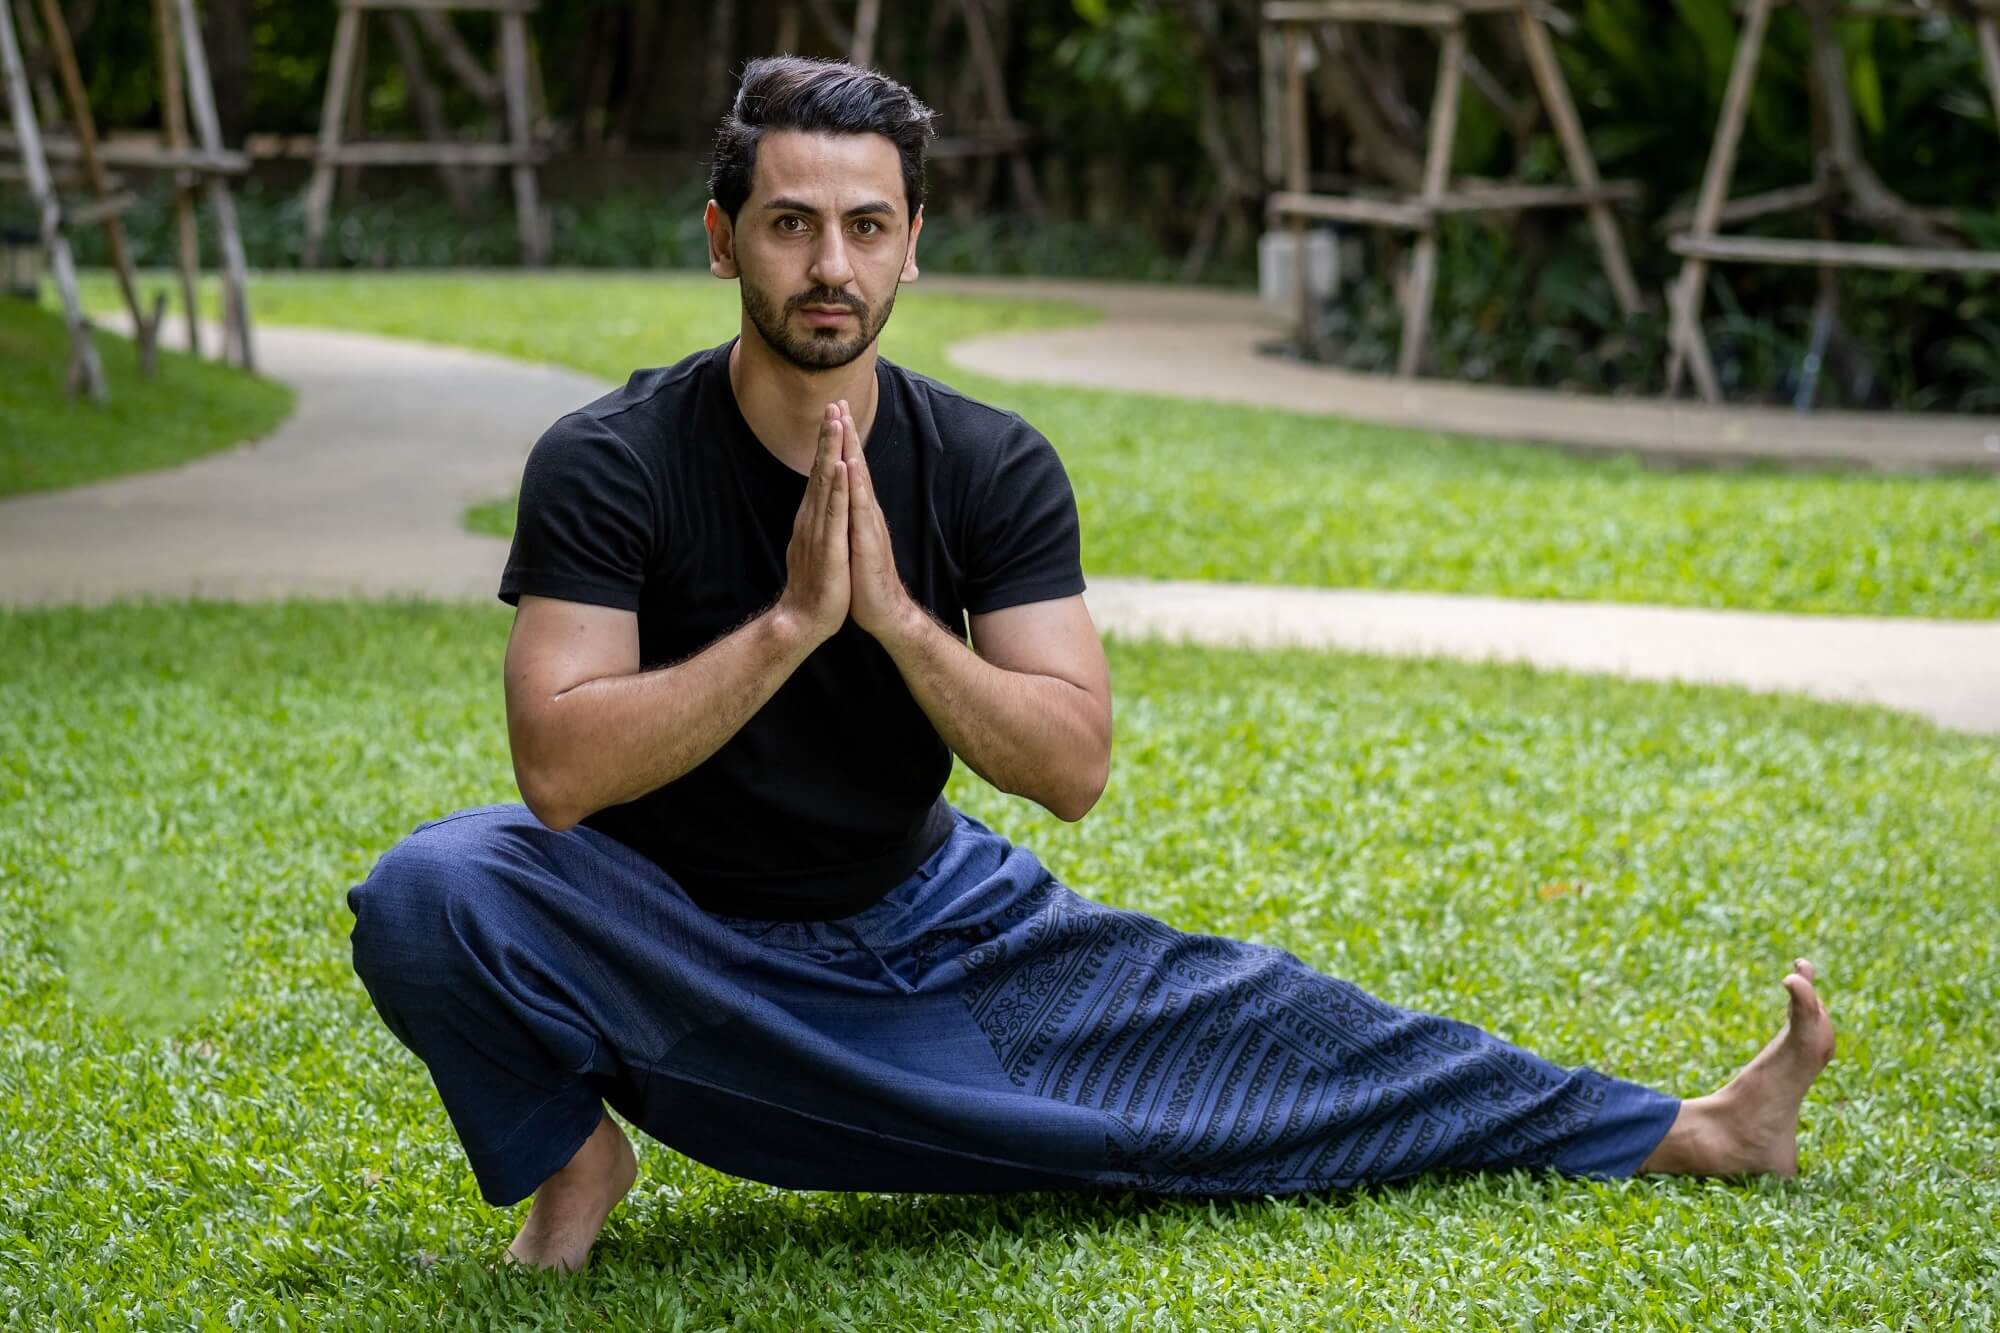 Mahan Pantalon Yoga homme, indigo (Indigo / S)